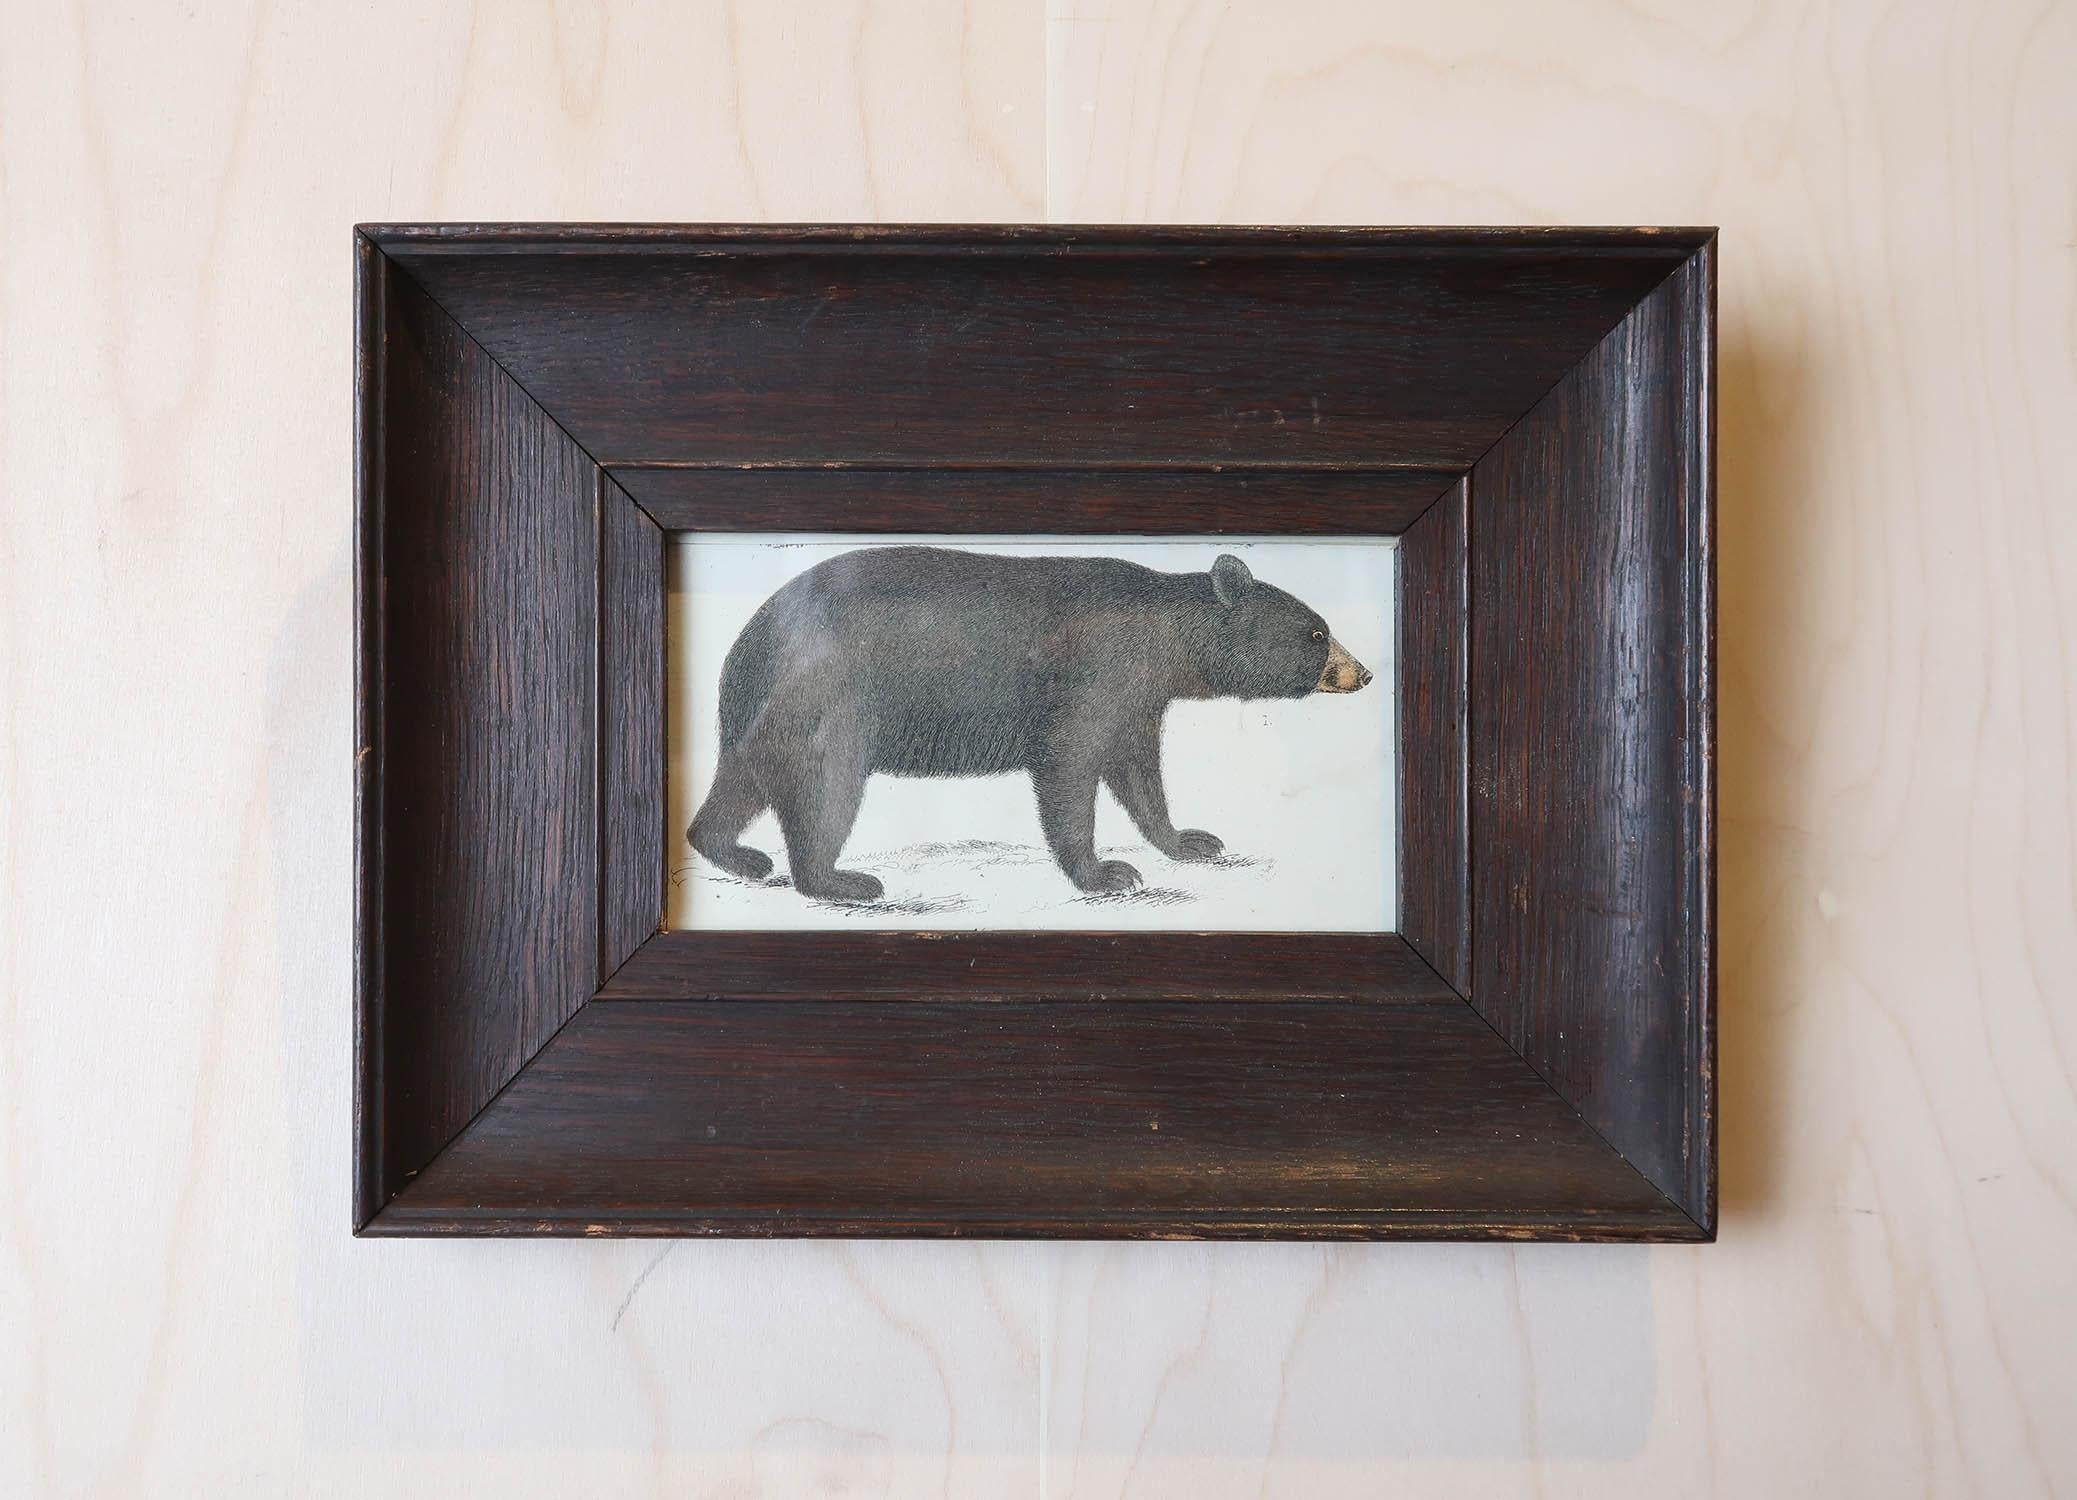 Superbe image d'un ours noir présentée dans un cadre en chêne vieilli.

Lithographie d'après le Cpt. Brown avec couleur originale à la main.

Publié en 1847.





